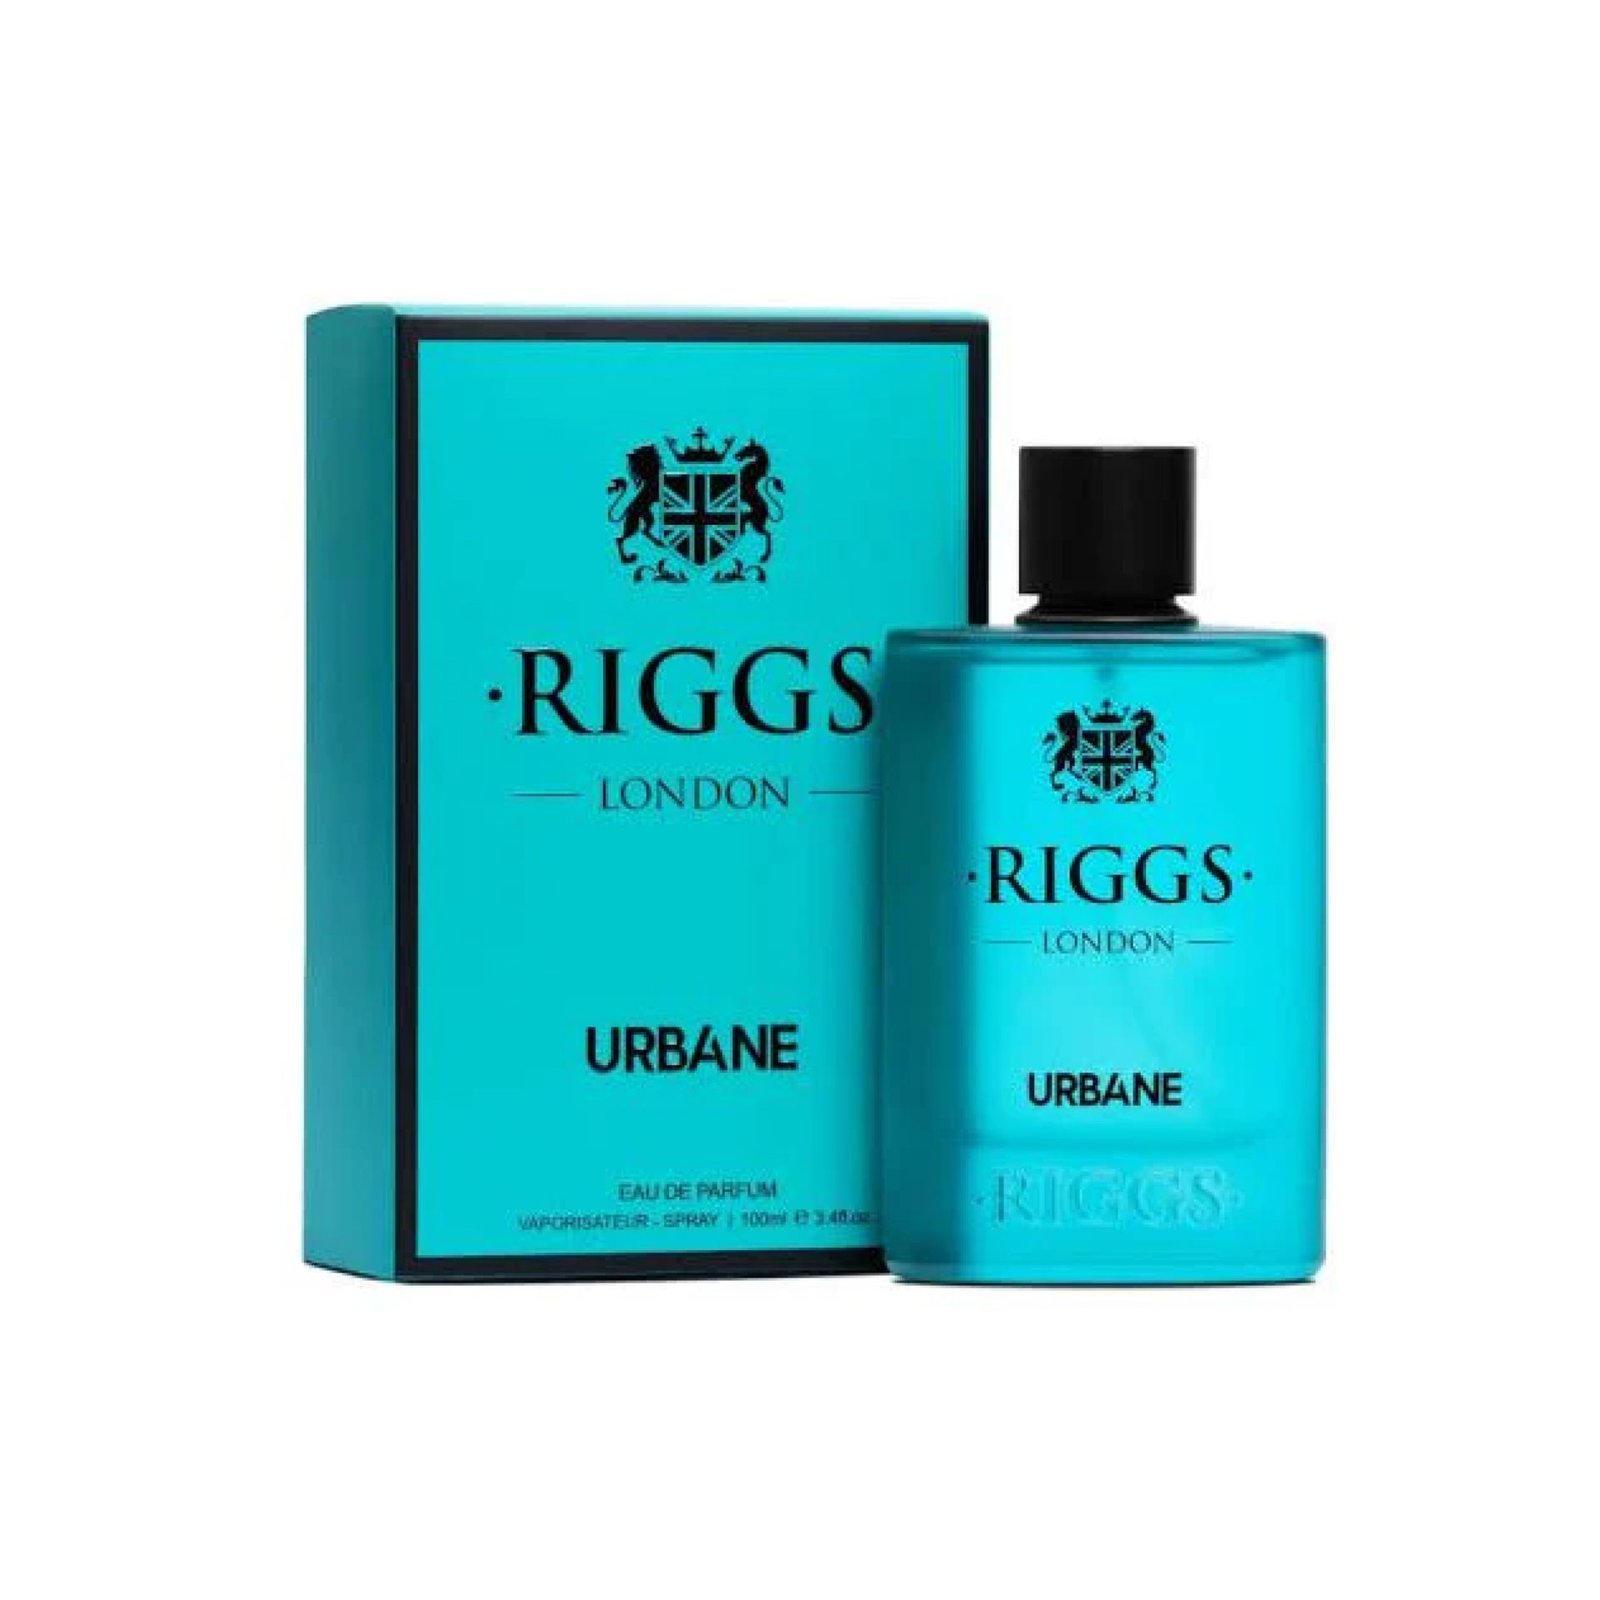 Riggs London Urbane Perfume 100ml